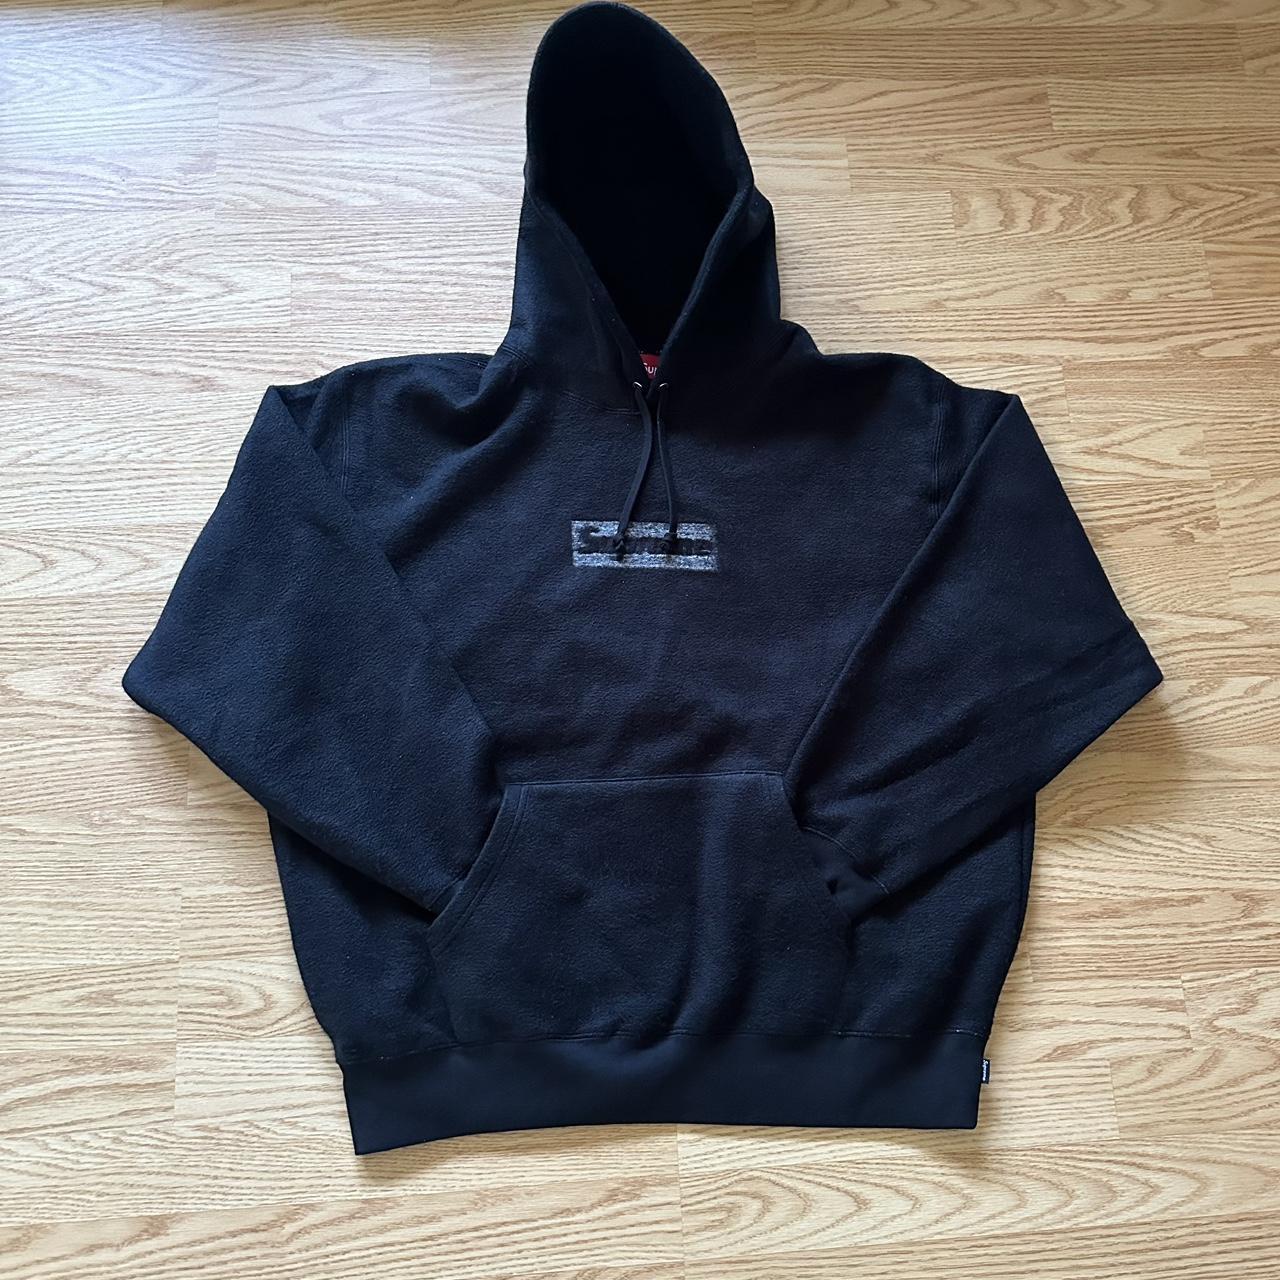 supreme reversible hoodie *BRAND NEW * never - Depop